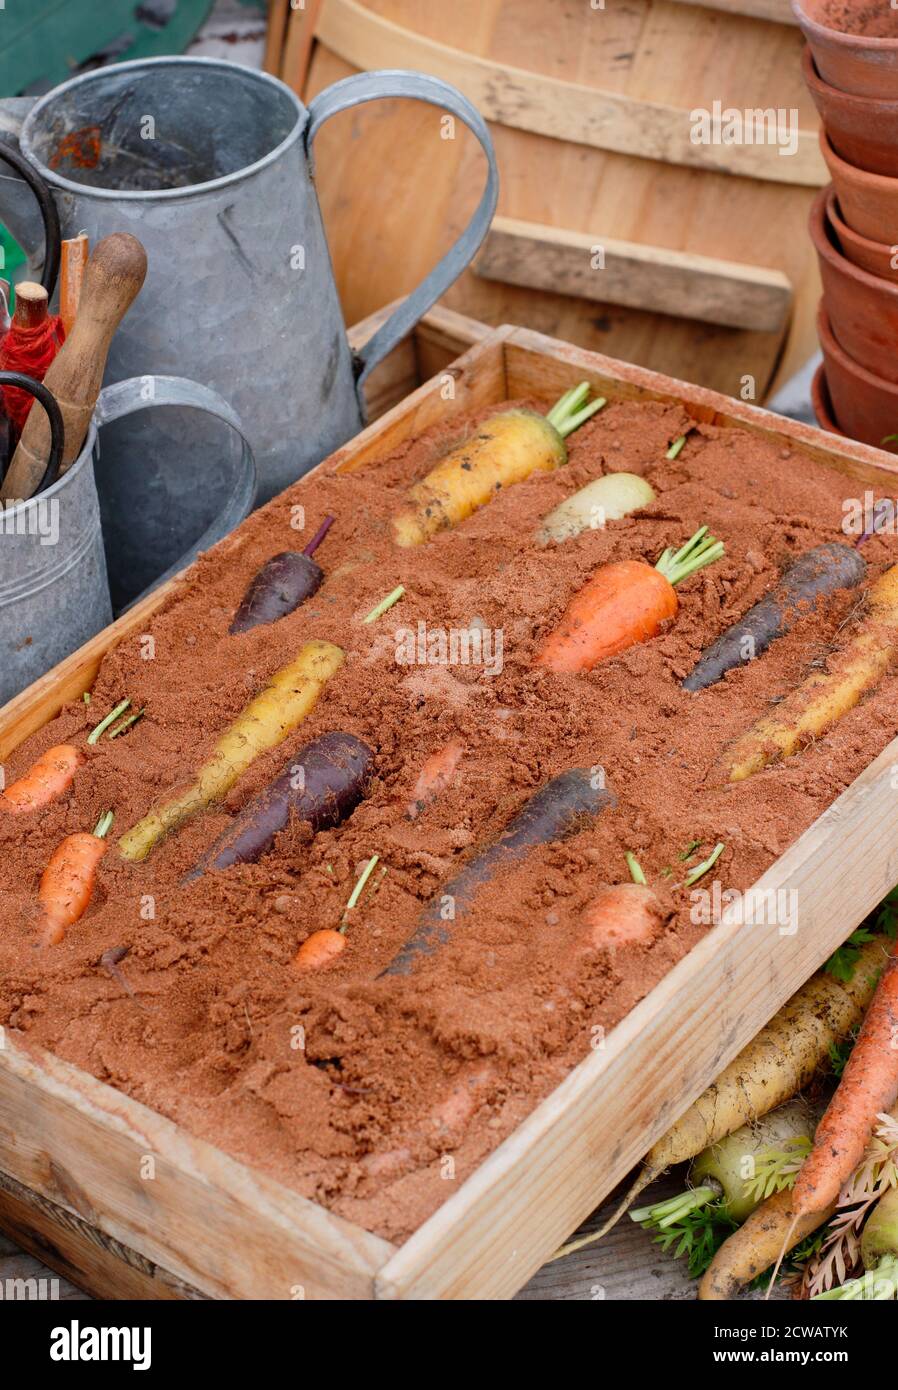 Stoccaggio carote arcobaleno in scatola di legno di sabbia umida - strato superiore di sabbia omesso per visualizzare la verdura. Foto Stock